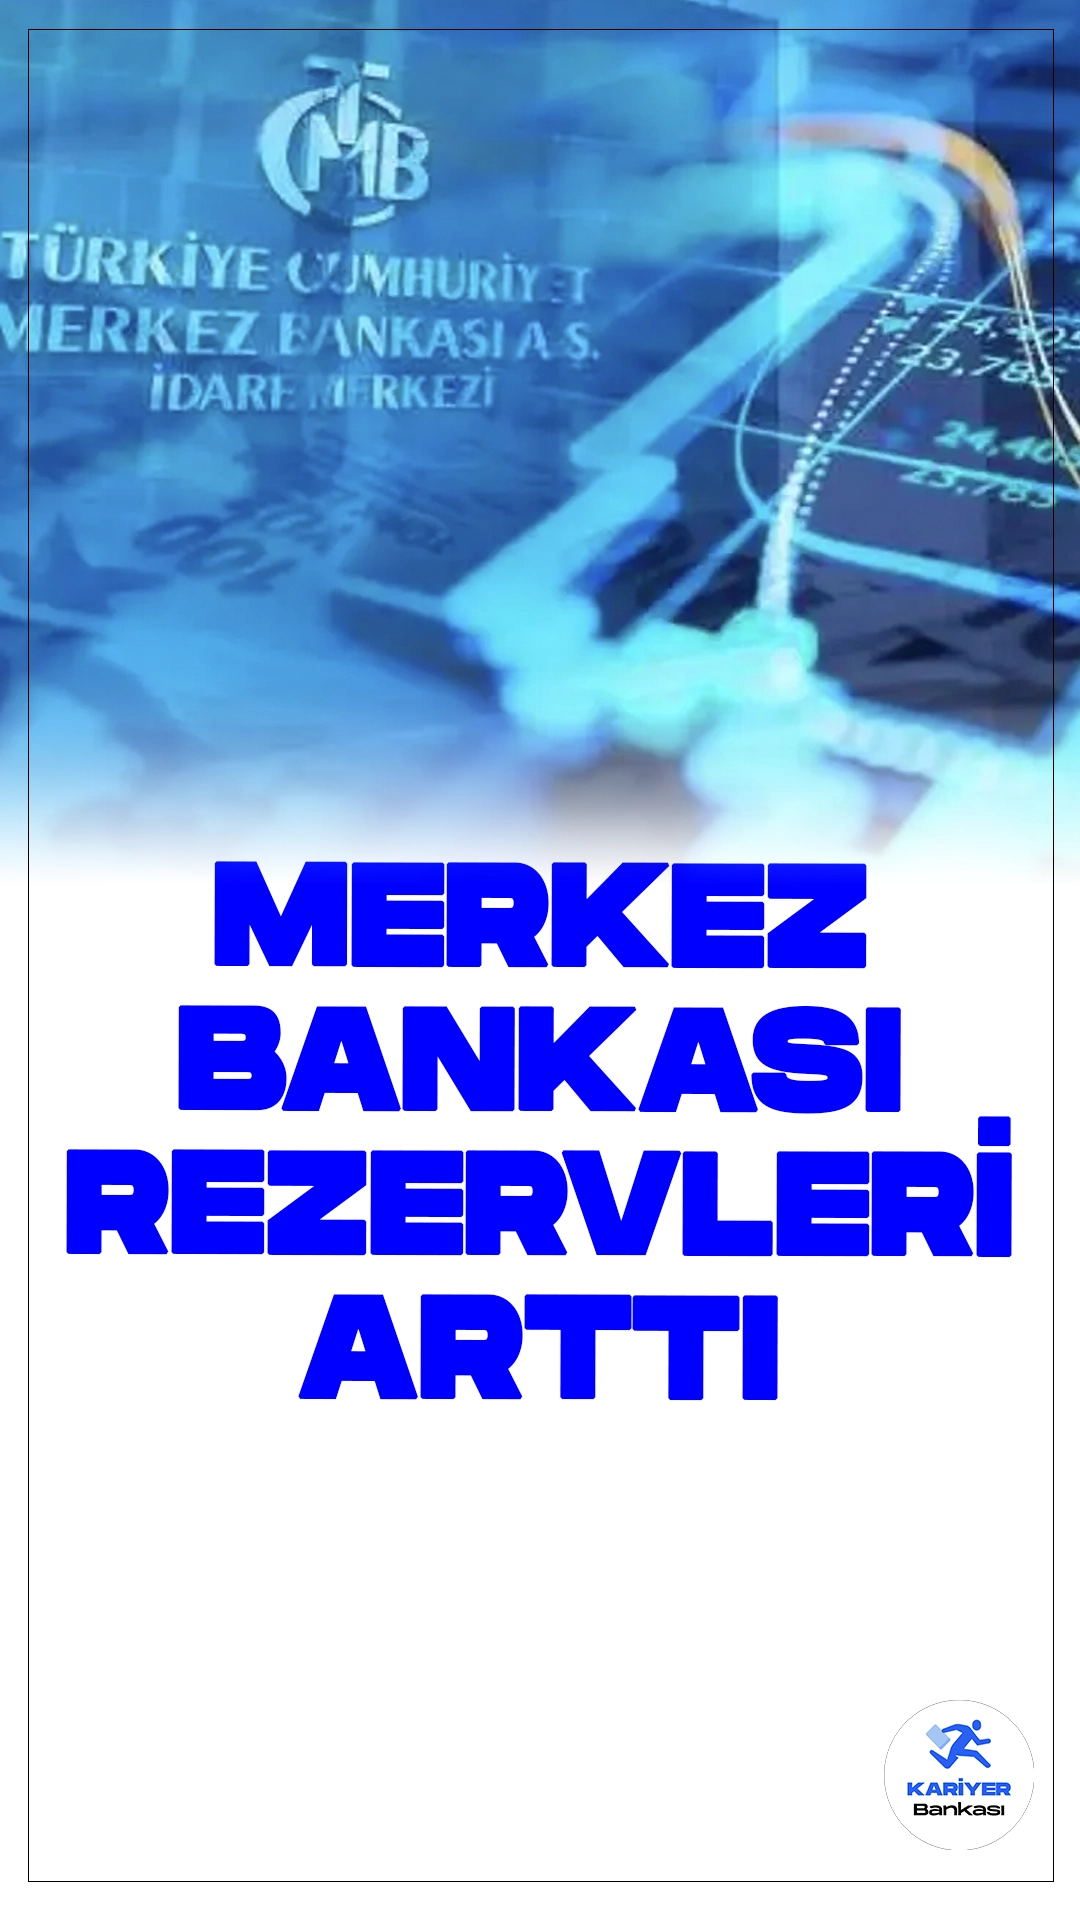 Merkez Bankası Rezervleri Arttı.Türkiye Cumhuriyet Merkez Bankası (TCMB) tarafından yapılan son açıklamalara göre, Merkez Bankası'nın toplam rezervleri son 3 yılın en dikkate değer artışını kaydetti. 10 Mayıs haftasında, bir önceki haftaya göre 7 milyar 547 milyon dolarlık bir artış yaşanarak toplam rezerv miktarı 134 milyar 402 milyon dolara ulaştı.